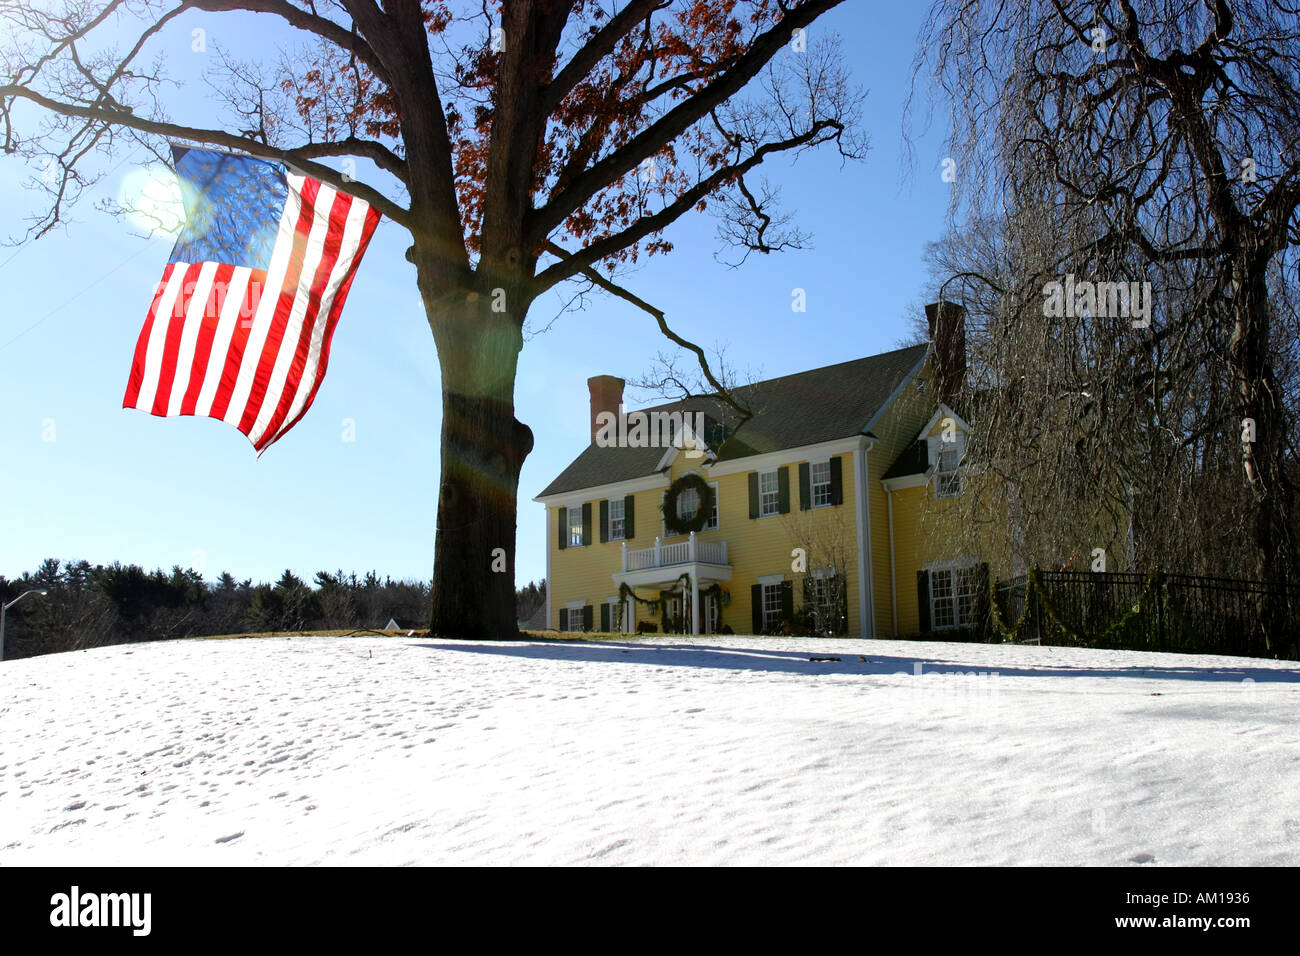 Chambre avec le drapeau américain dans l'arbre Concord Massachusetts Banque D'Images